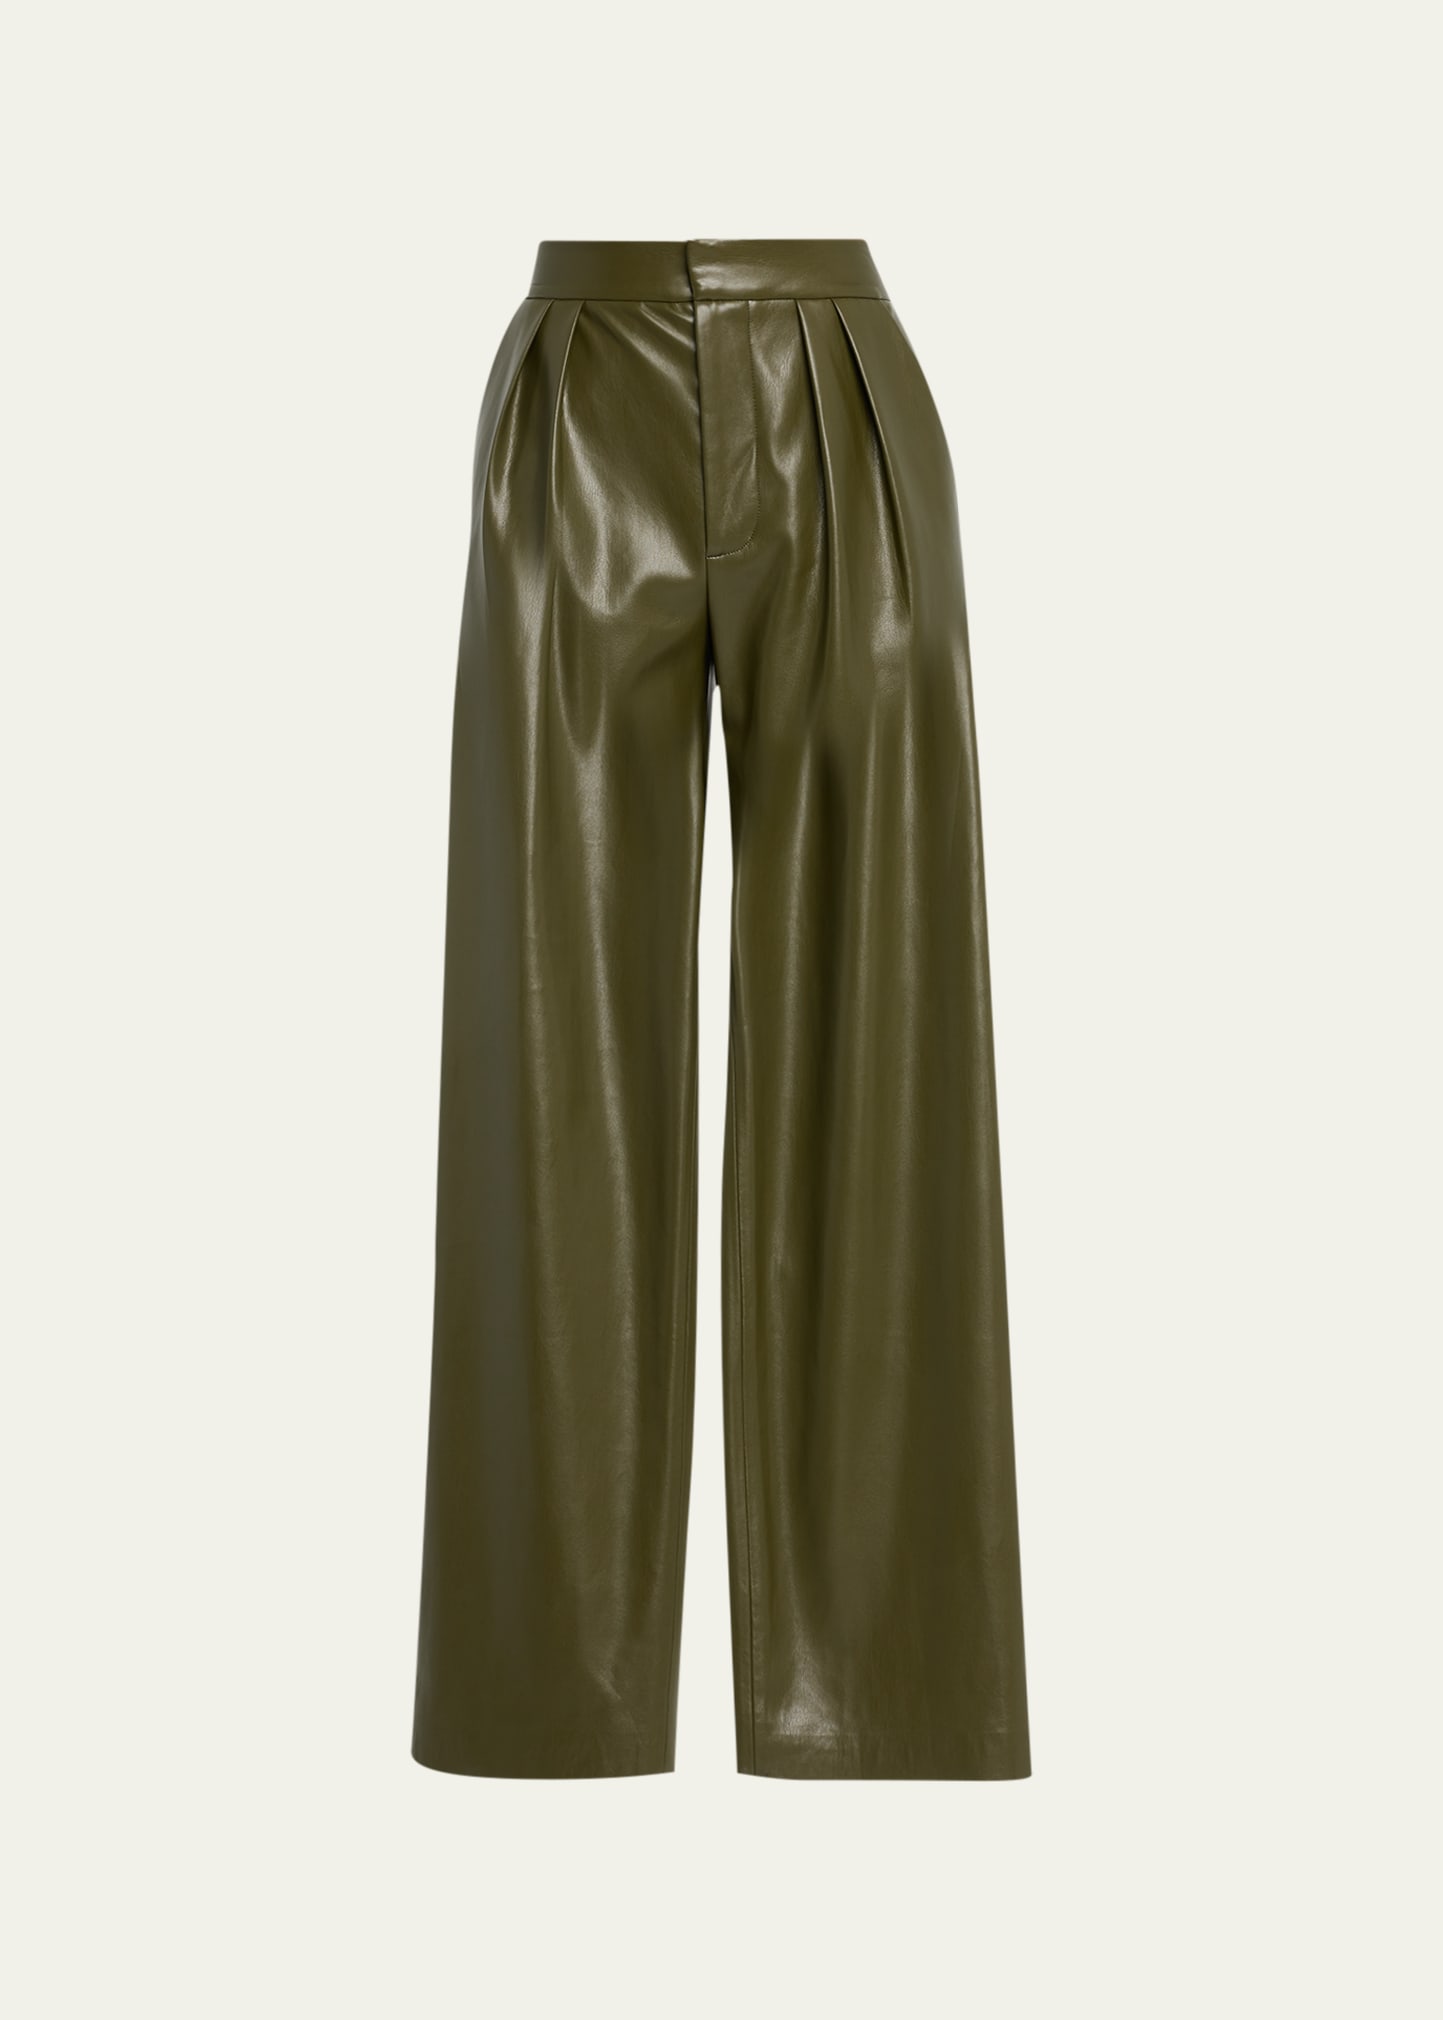 Alice + Olivia Pompey Pleated Vegan Leather Pants